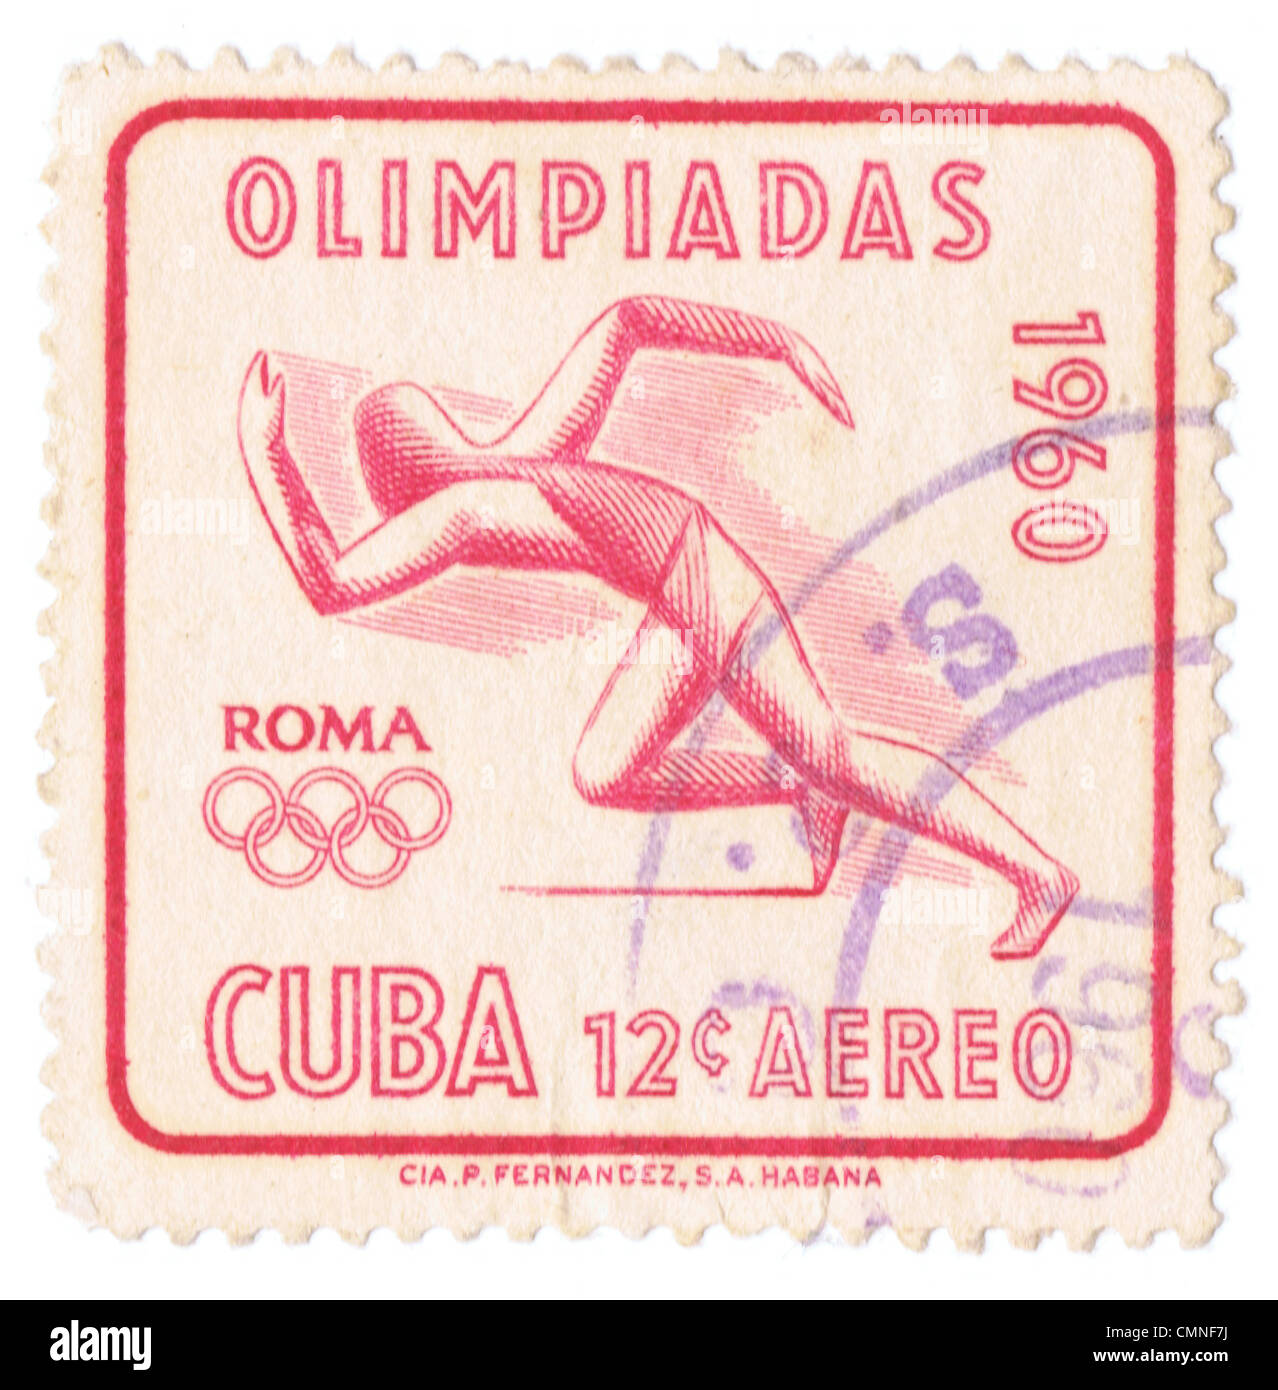 Kubanischen Briefmarke zum Gedenken an den Olympischen Spielen 1960 offiziell bekannt als die Spiele der XVII (17.) Olympiade war ein internationales-Multisport Event vom 25 August bis 11. September 1960 in Rom abgehalten Stockfoto